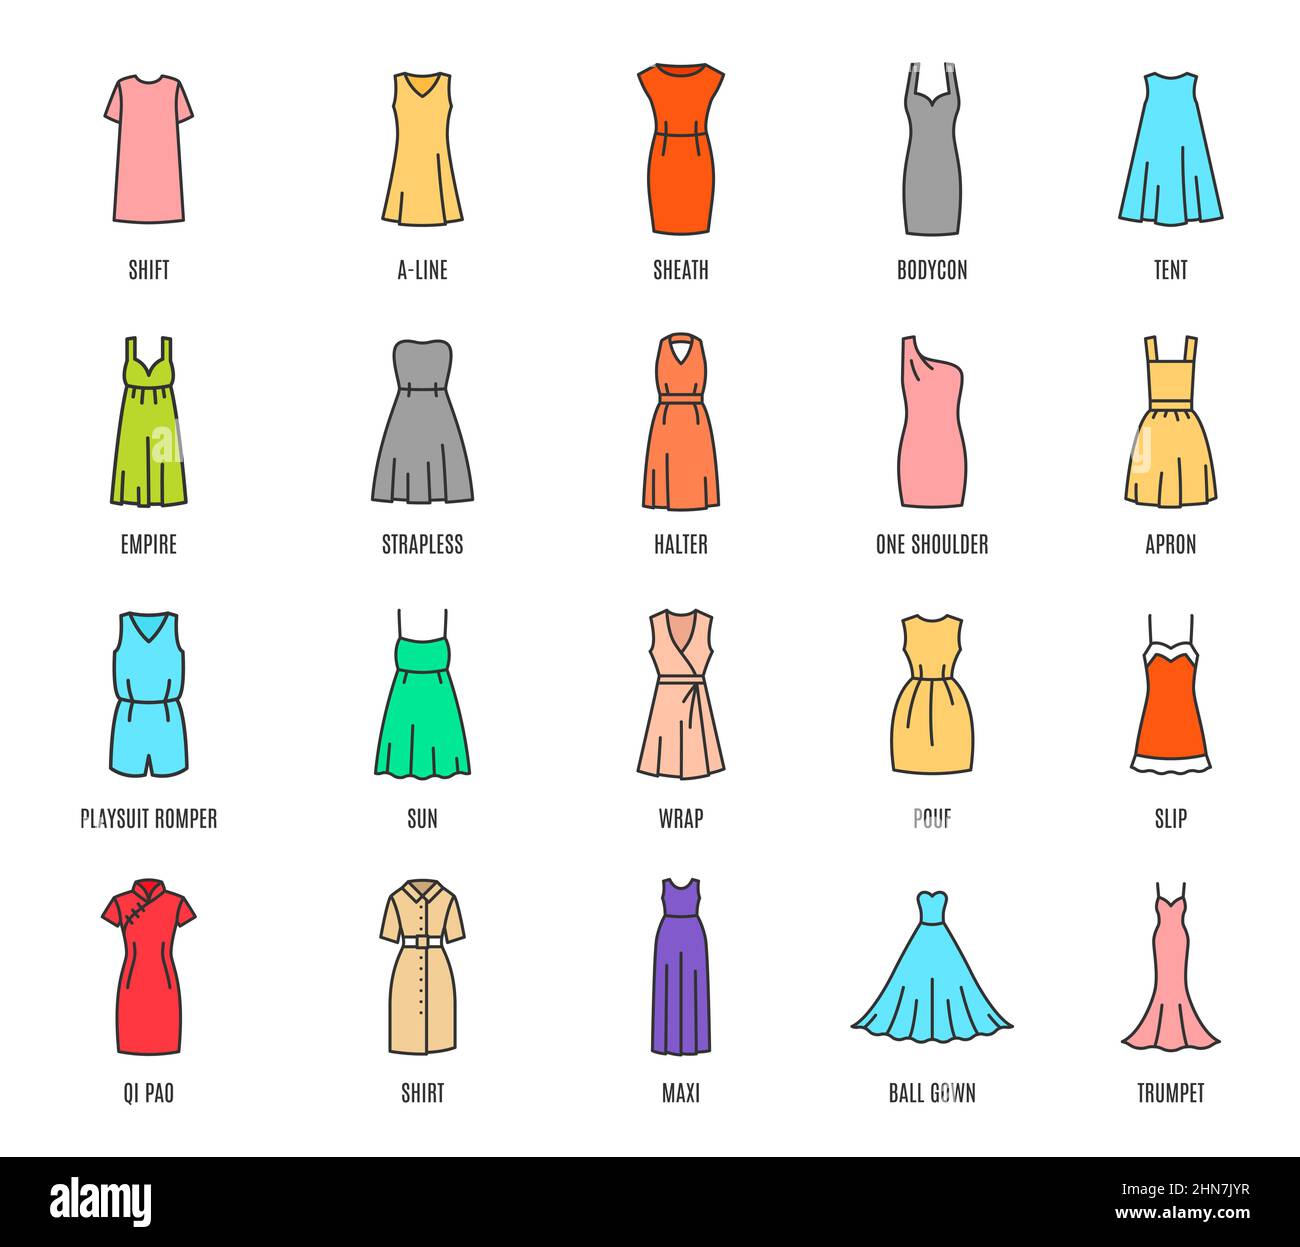 Color mujer vestidos iconos aislados, moda femenina tipos de ropa, vector.  Las mujeres usan y visten modelos con nombres, partes de arriba y faldas  con formas, bodyc Imagen Vector de stock 